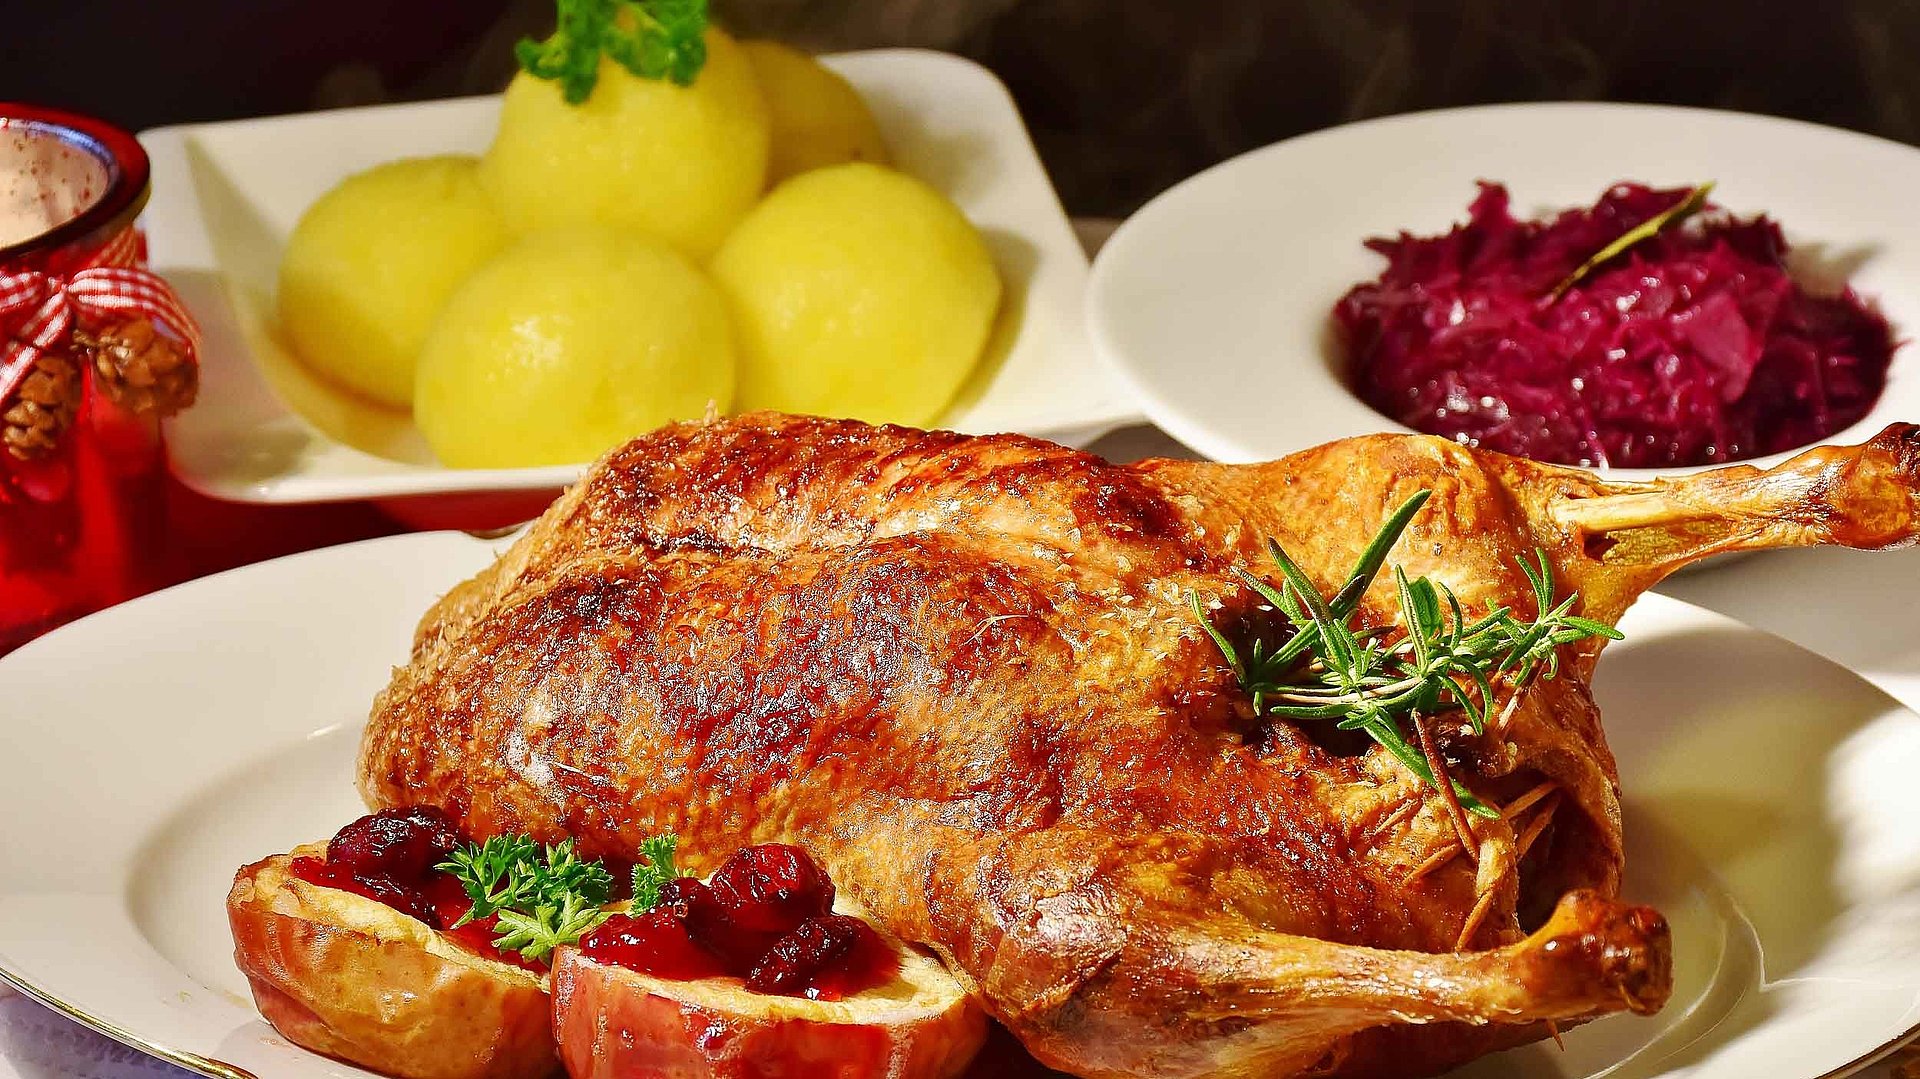 Gehobene Küche in Nürnberg - Fokus auf Teller mit Ente und separaten Tellern jeweils mit Knödel und Rotkohl